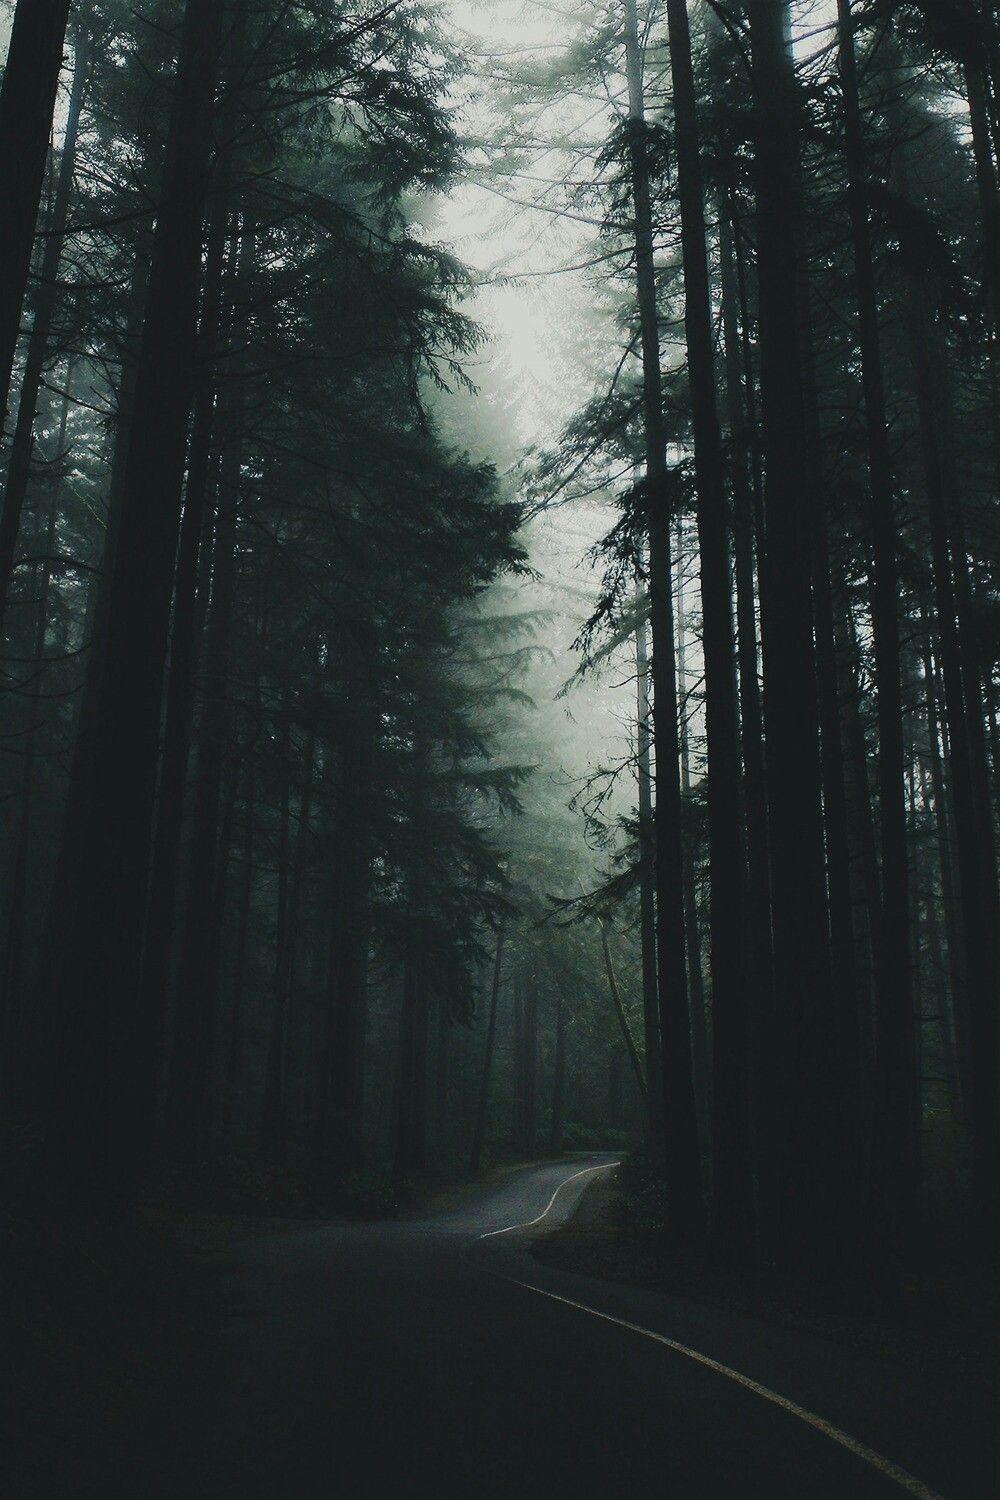 obilo naše prehod tumblr aesthetic woods fog